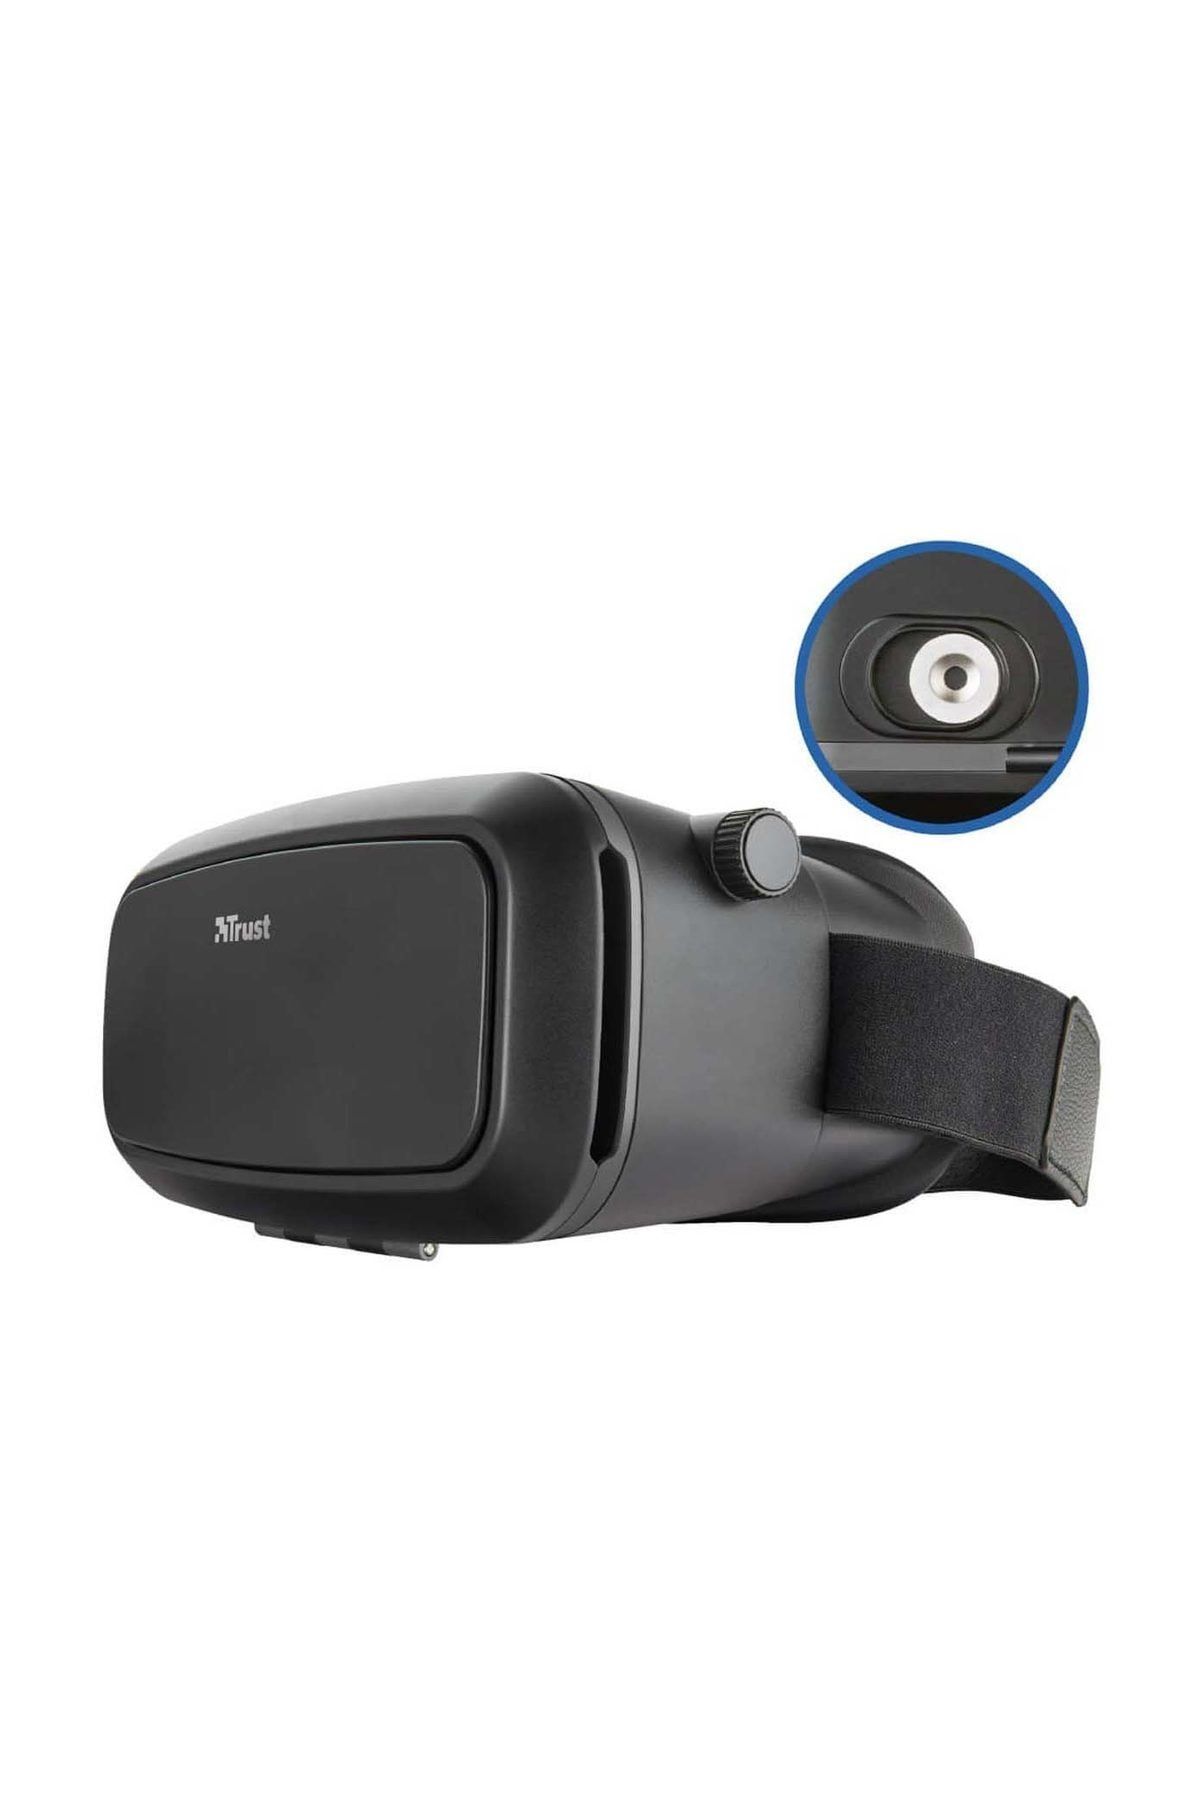 Trust 21534 Exos Plus Akıllı Telefon İçin 3D Sanal Gerçeklik (VR) Gözlüğü